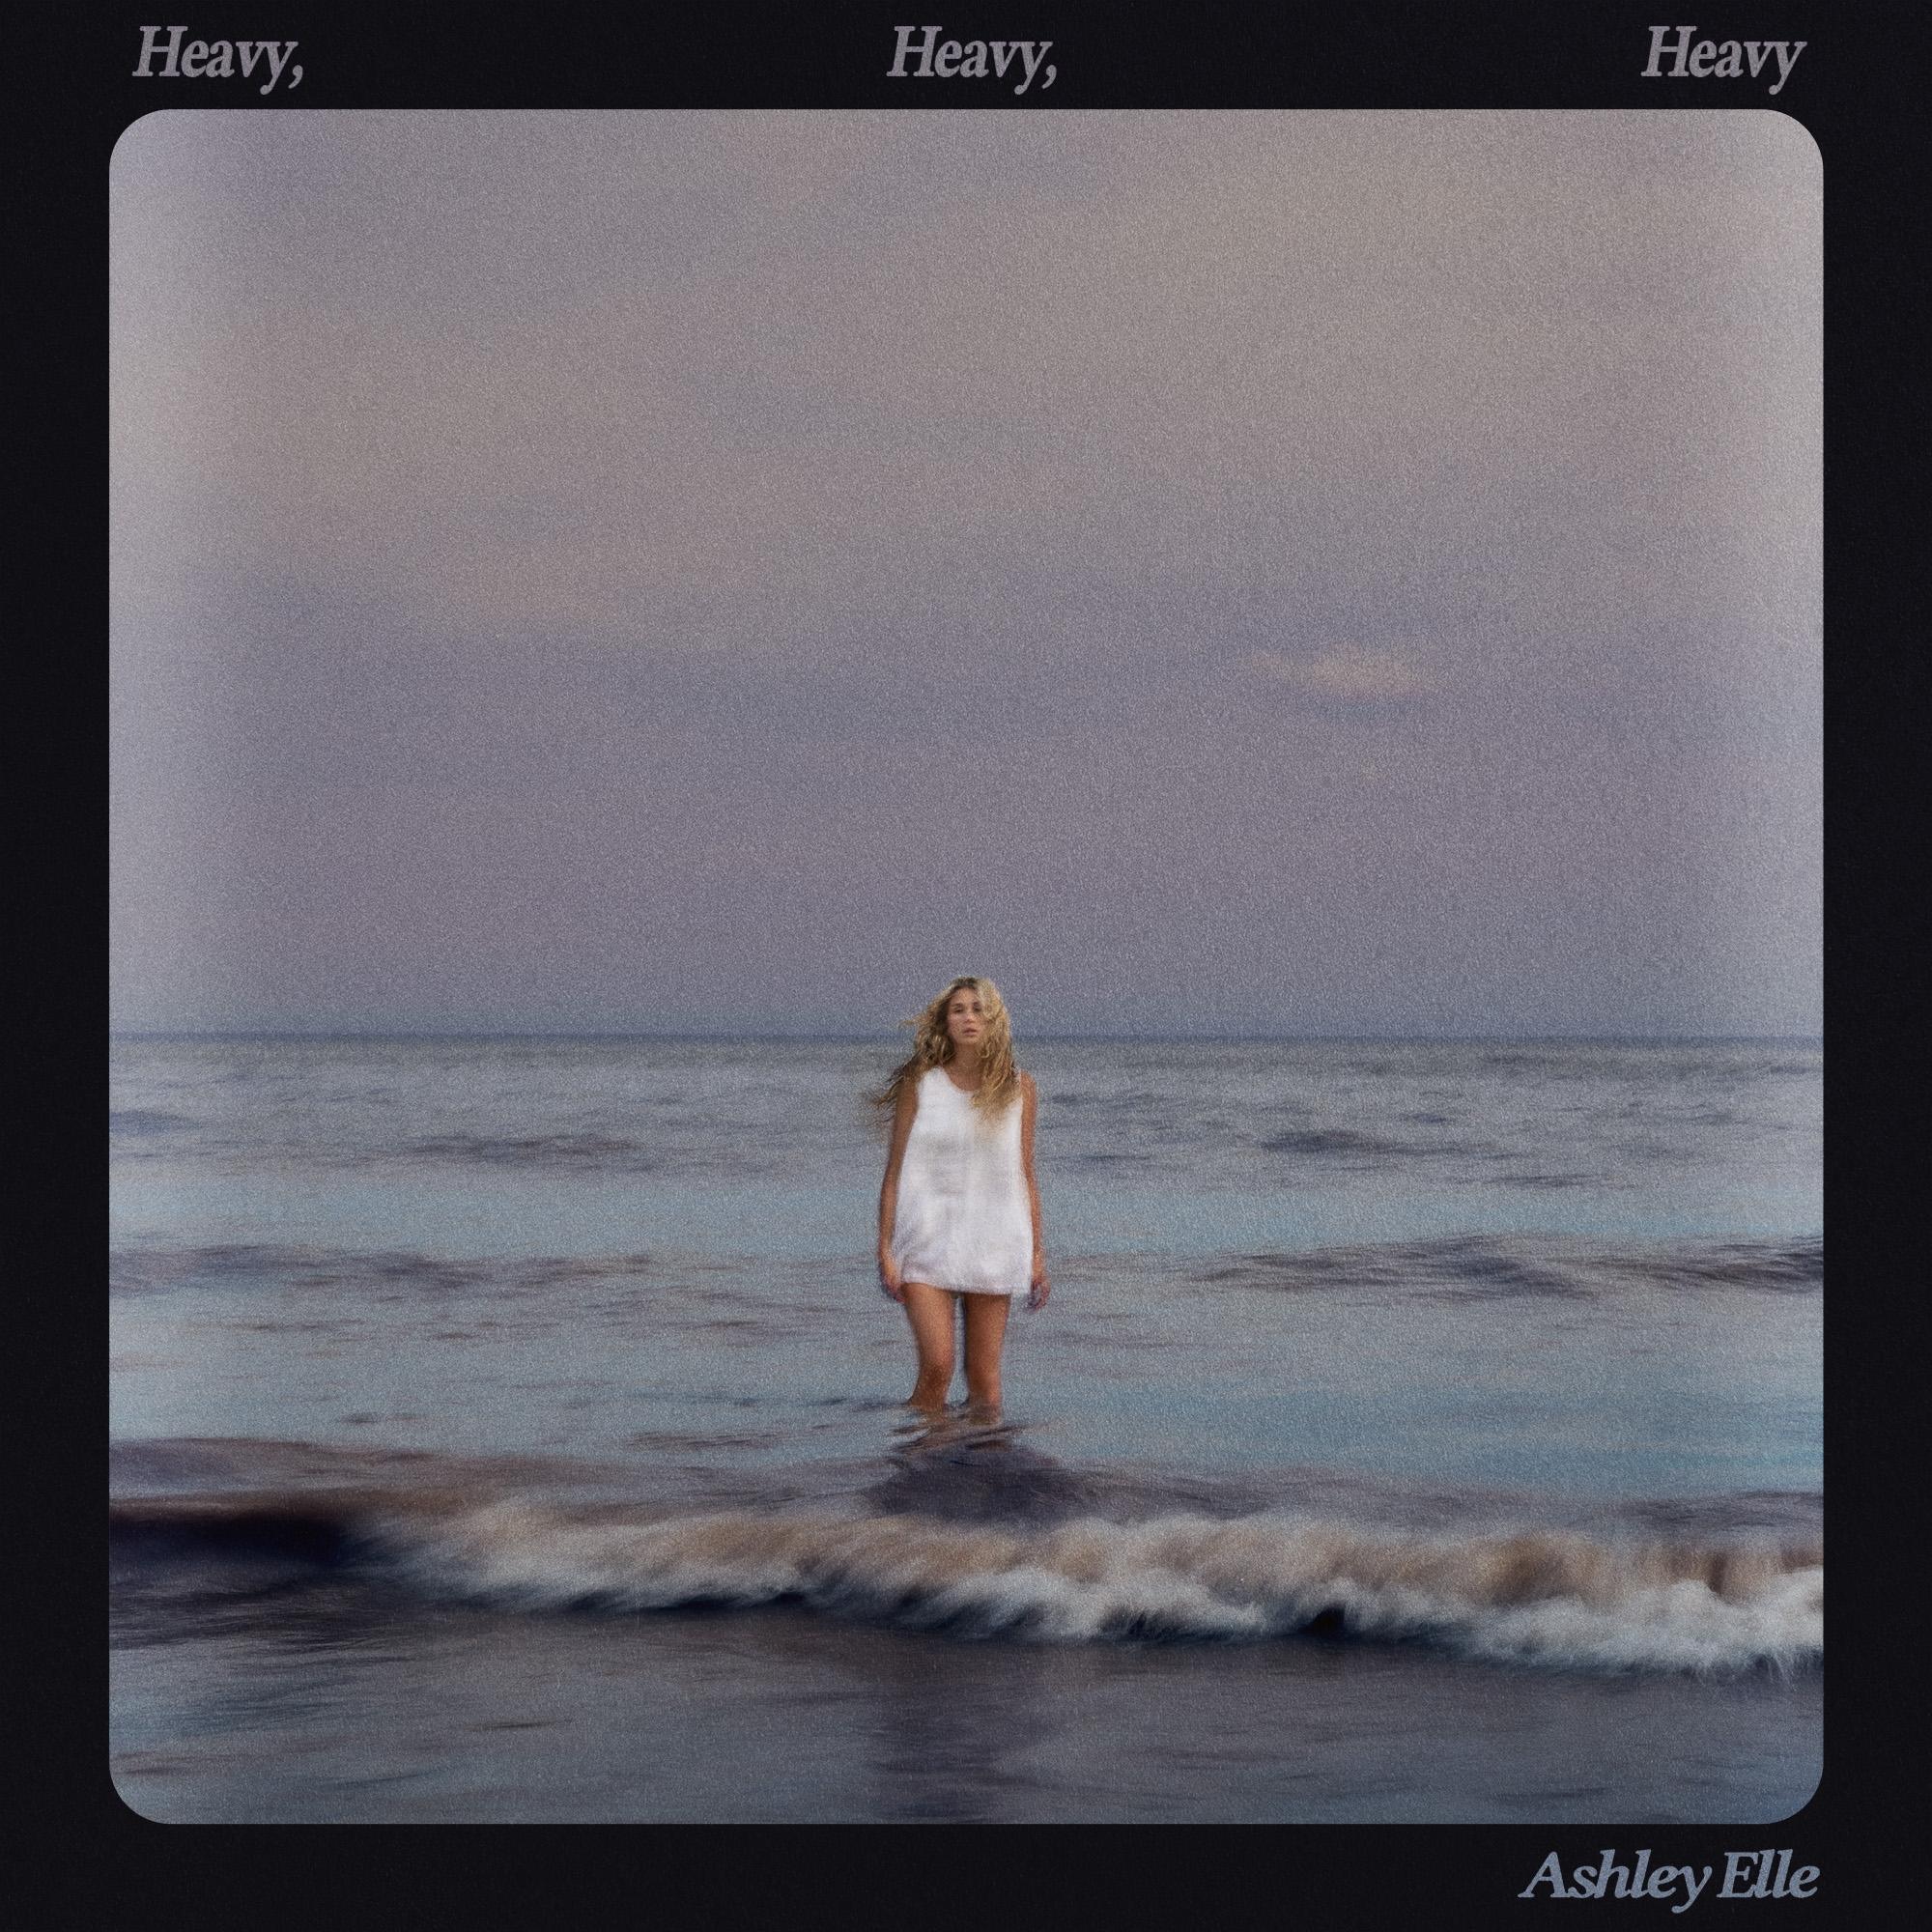 Ashley Elle - "Heavy, Heavy, Heavy" 